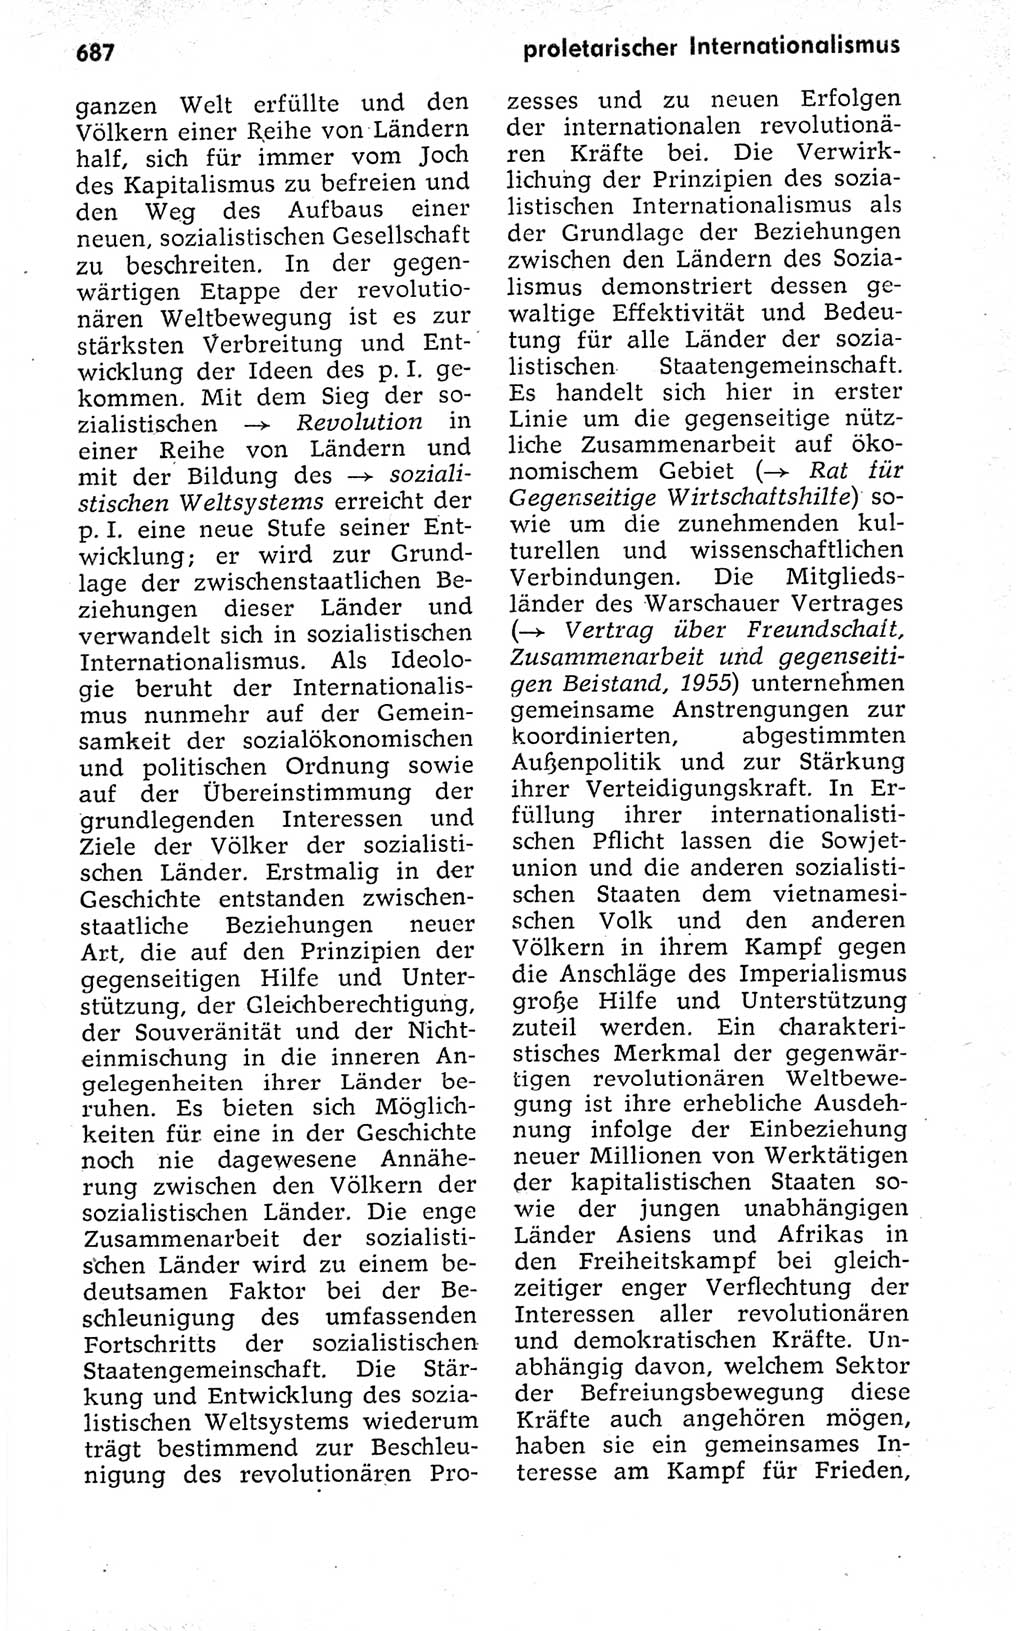 Kleines politisches Wörterbuch [Deutsche Demokratische Republik (DDR)] 1973, Seite 687 (Kl. pol. Wb. DDR 1973, S. 687)